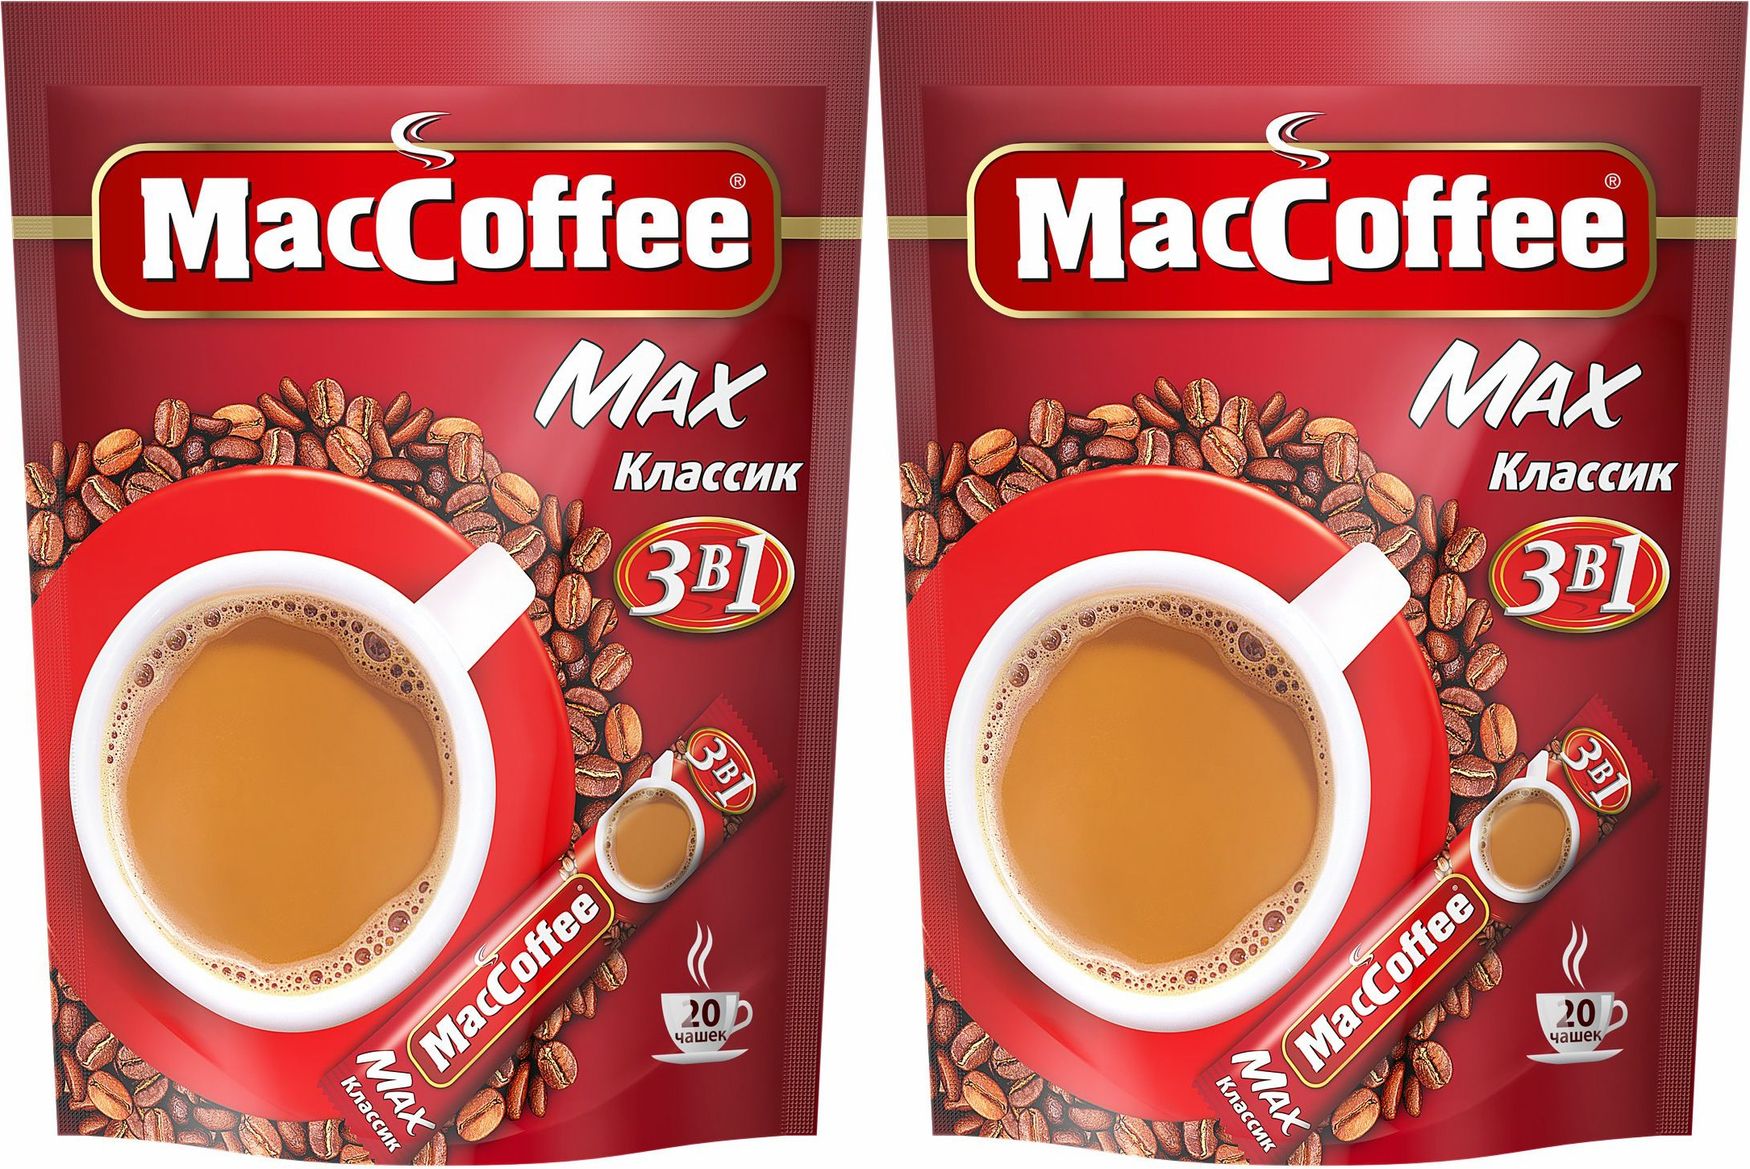 MACCOFFEE Max-Классик (3в1) кофейный напиток 16г*20*10. Кофе "MACCOFFEE" 3 В 1 (Классик) 16 г (20 шт). Маккофе 3 в 1 отзывы. Маккофе реклама.